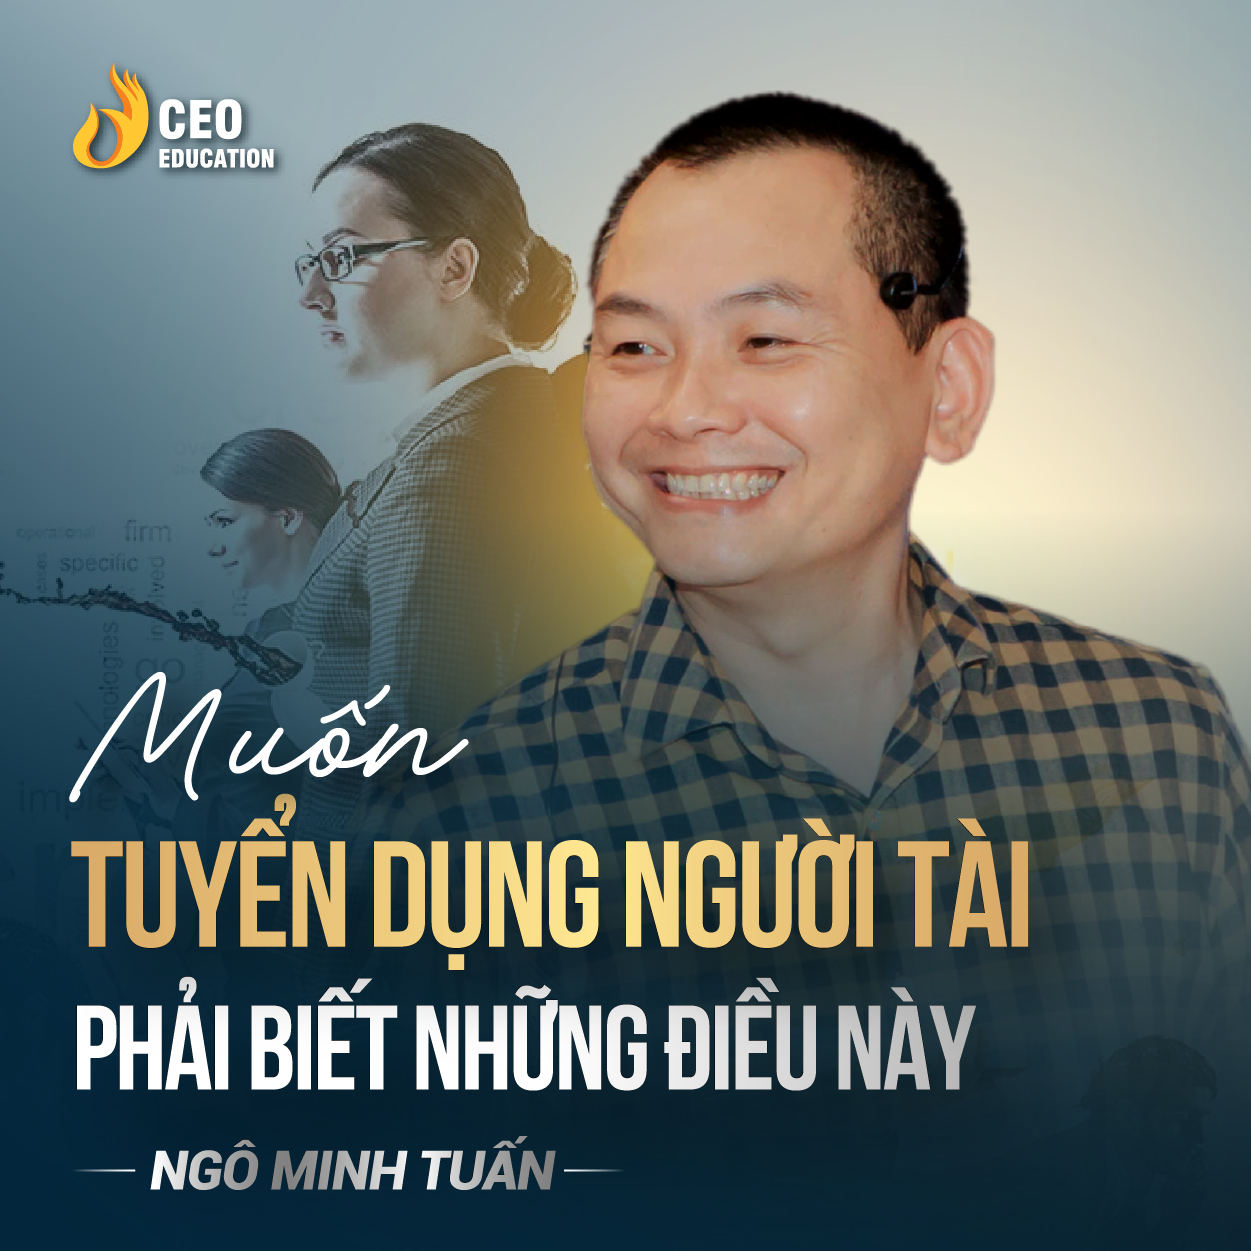 Đừng mong có nhân sự giỏi nếu không chịu đầu tư | Ngô Minh Tuấn | Học Viện CEO Việt Nam